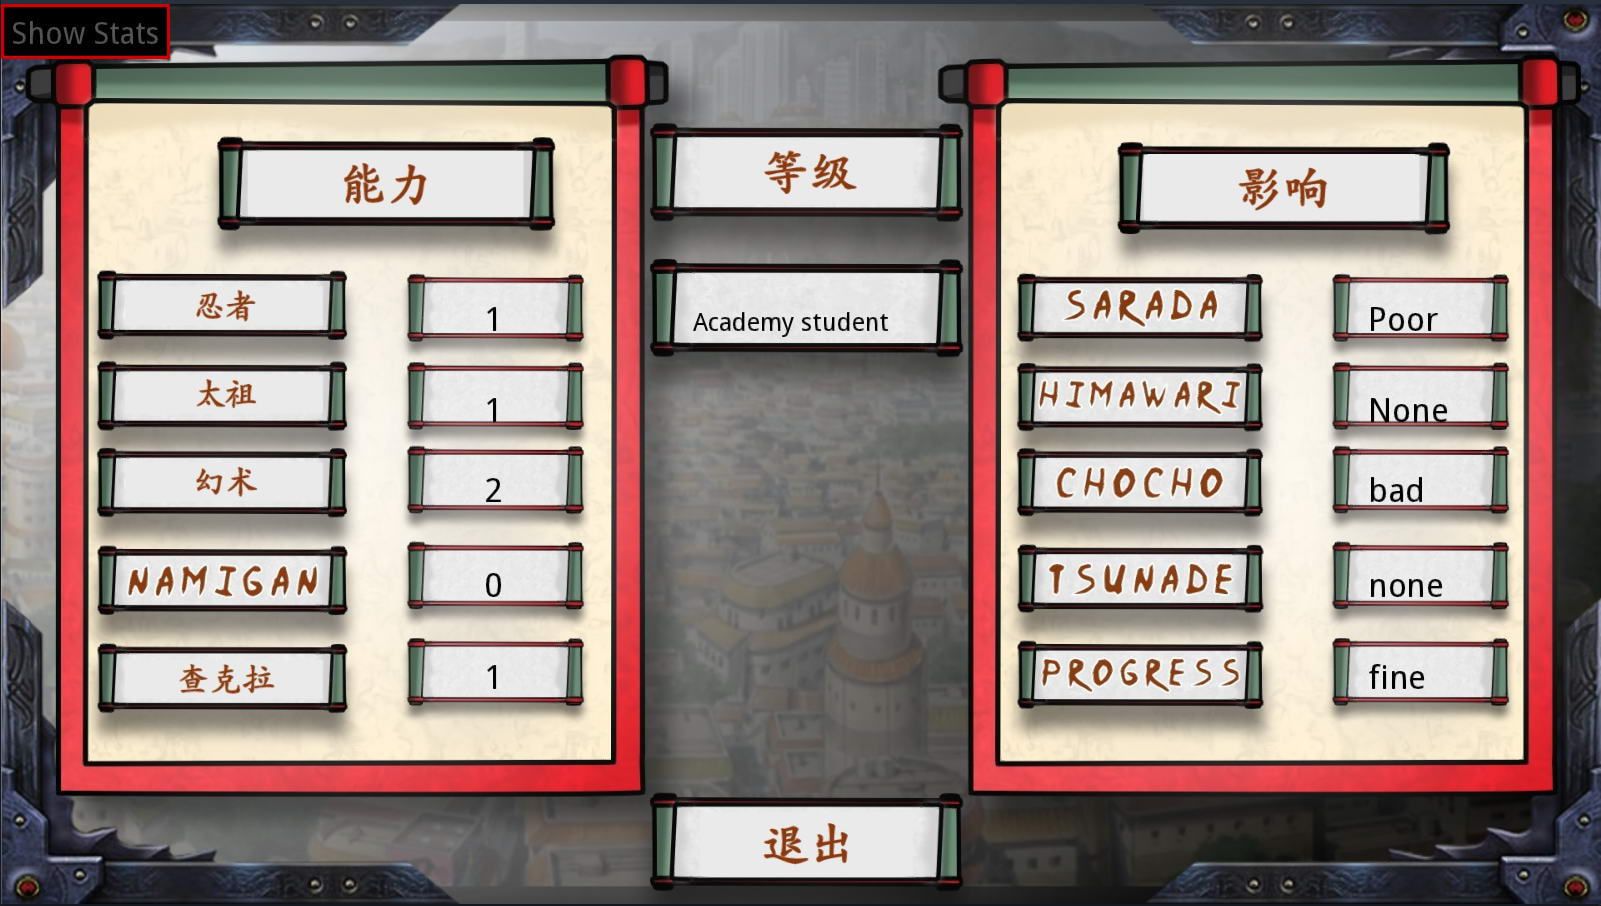 佐良娜的训练最后的战争2.0游戏中文完整版 v1.5截图